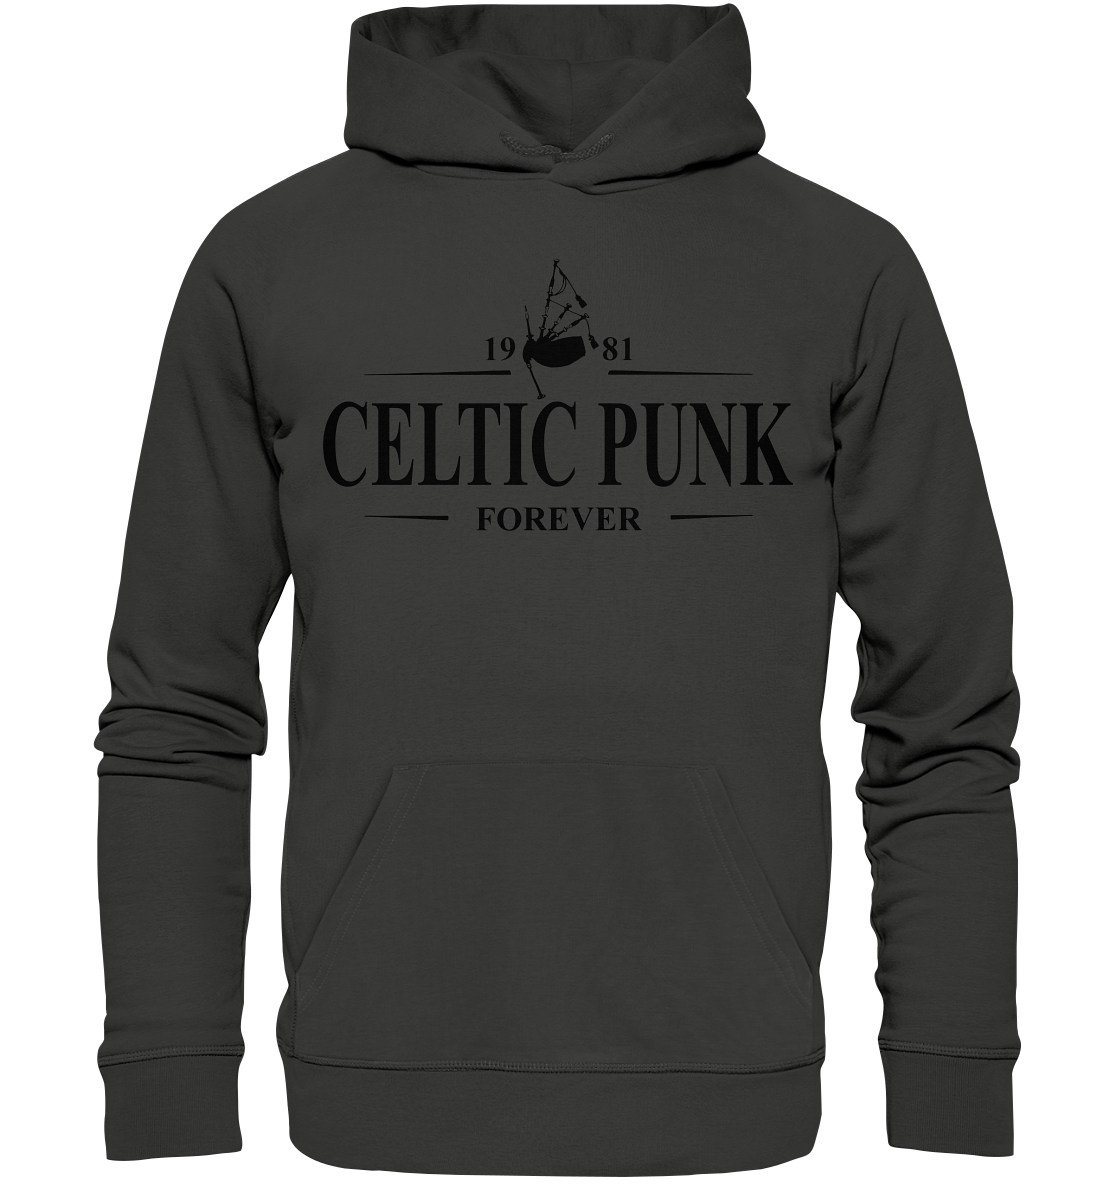 Celtic Punk "Forever" - Premium Unisex Hoodie